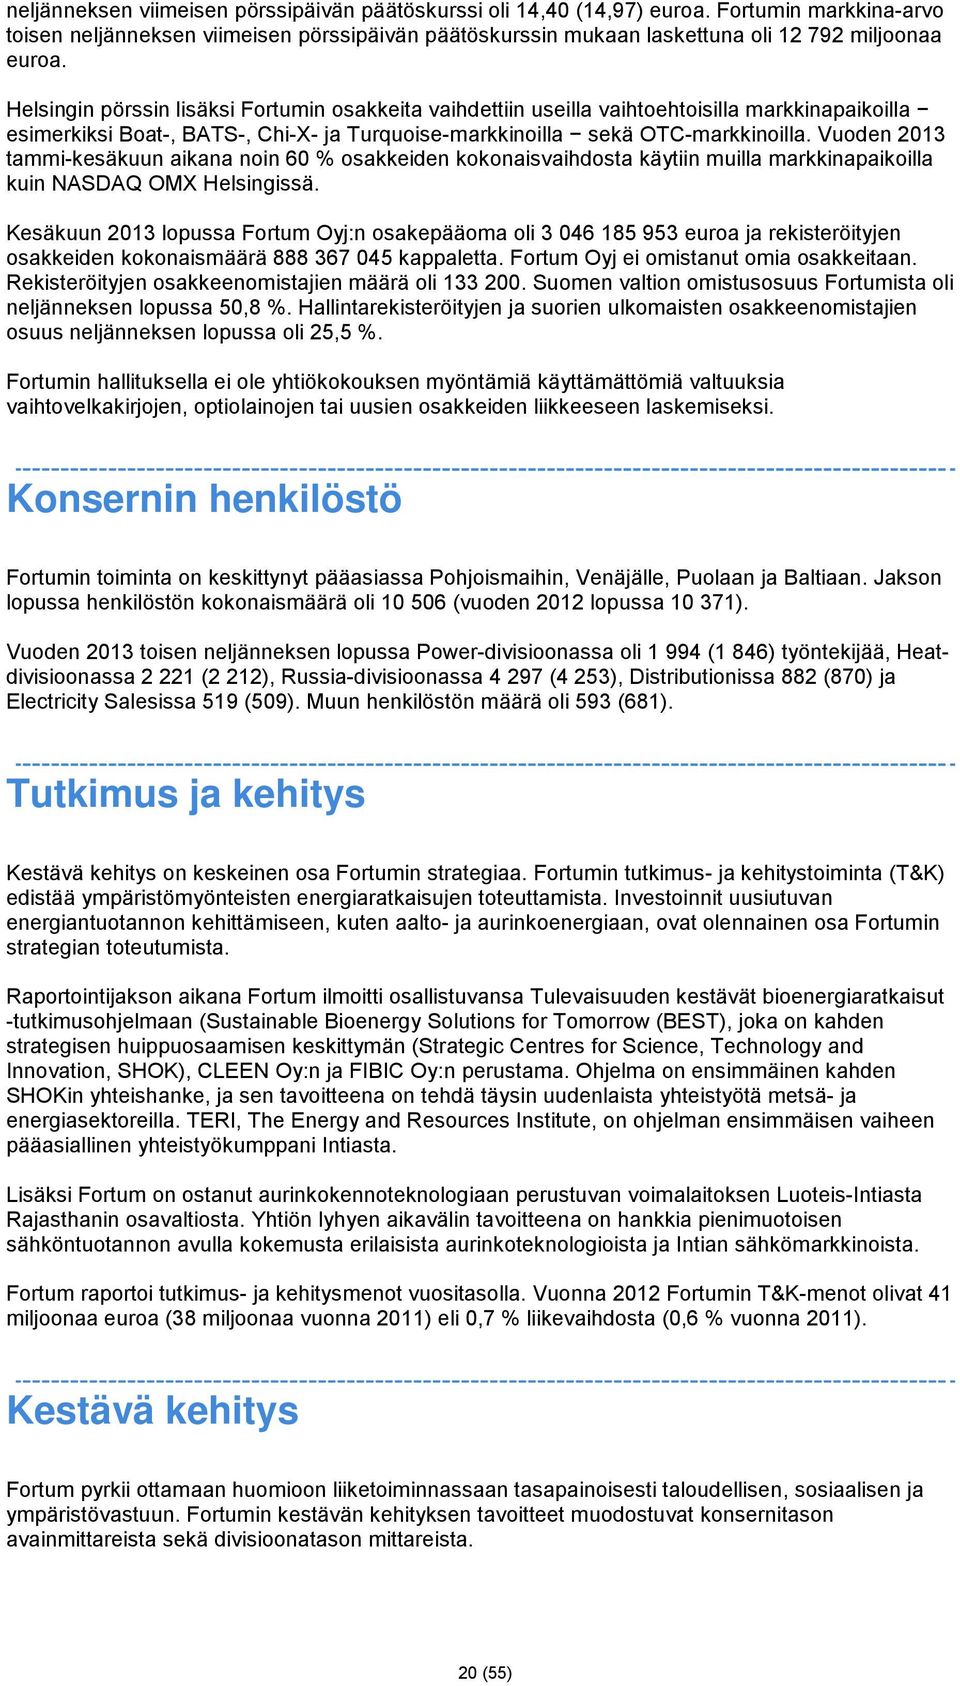 Vuoden 2013 tammi-kesäkuun aikana noin 60 % osakkeiden kokonaisvaihdosta käytiin muilla markkinapaikoilla kuin NASDAQ OMX Helsingissä.